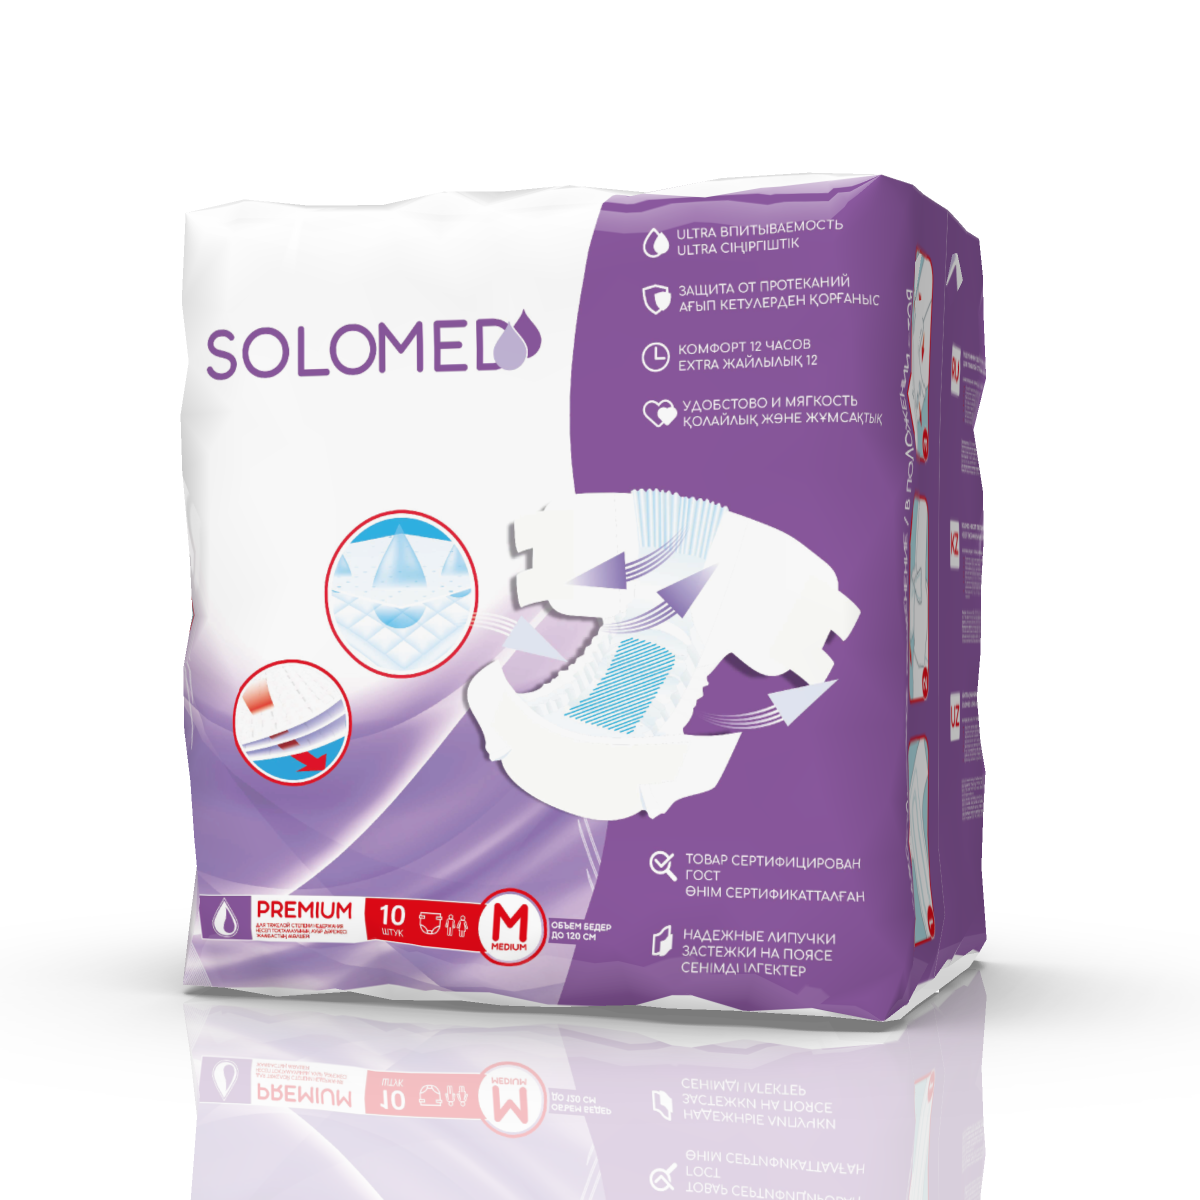 Solomed Premium, подгузники для взрослых (размер M), 10 шт.